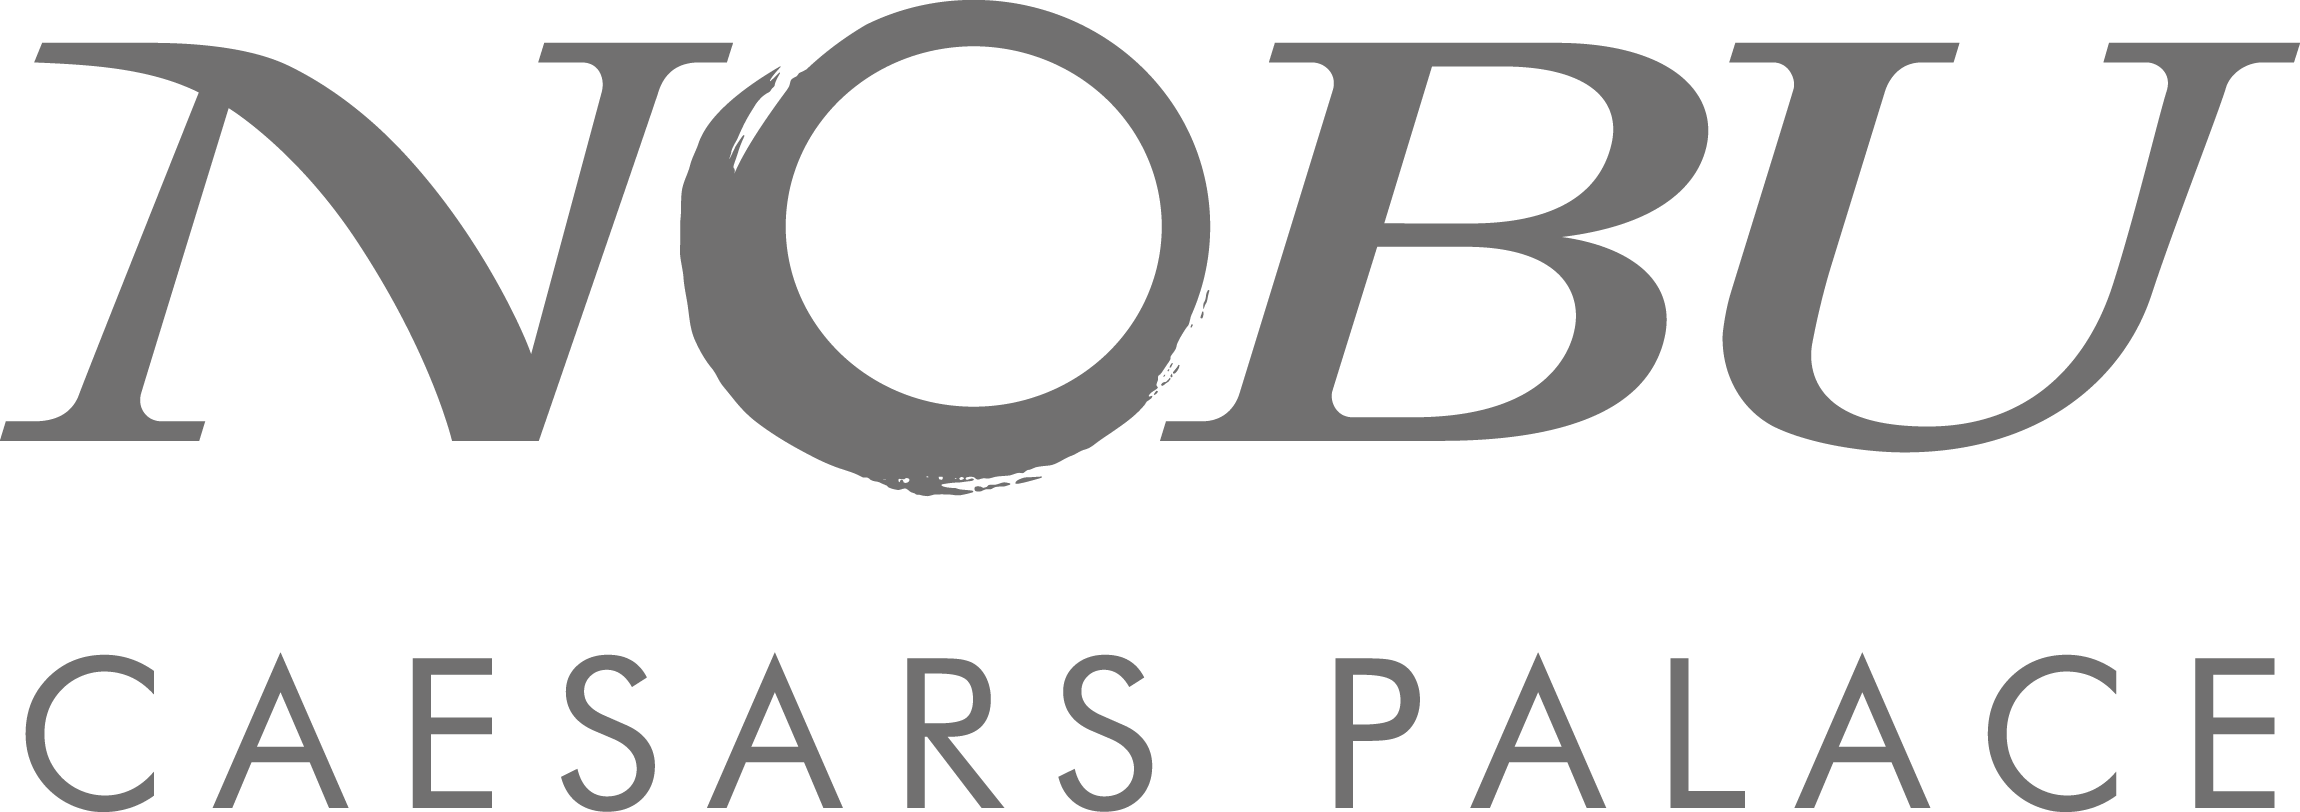 Caesars Nobu logo